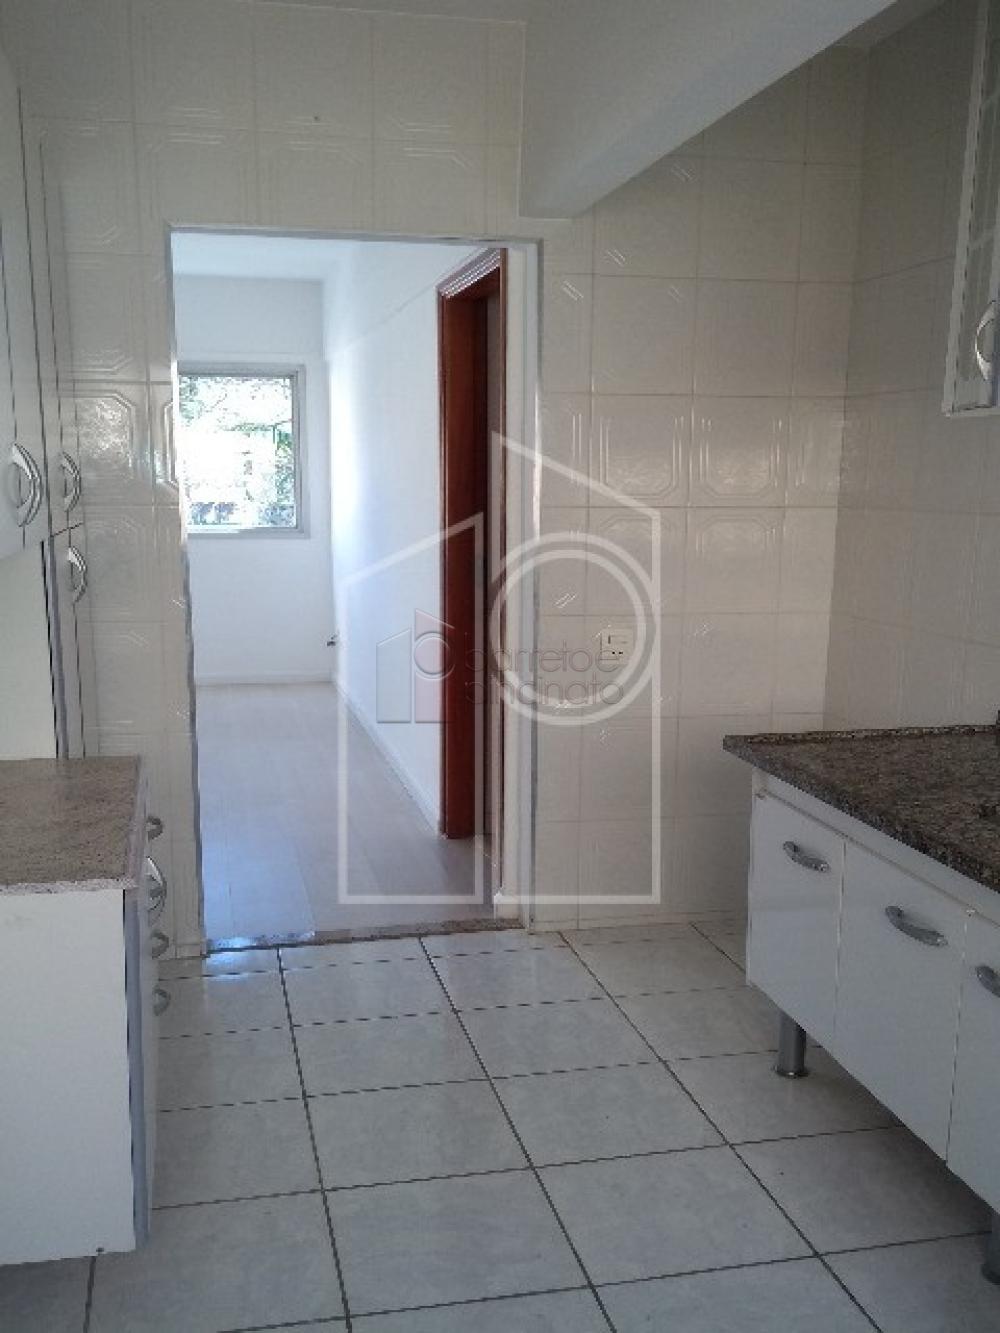 Alugar Apartamento / Padrão em Jundiaí R$ 1.800,00 - Foto 5